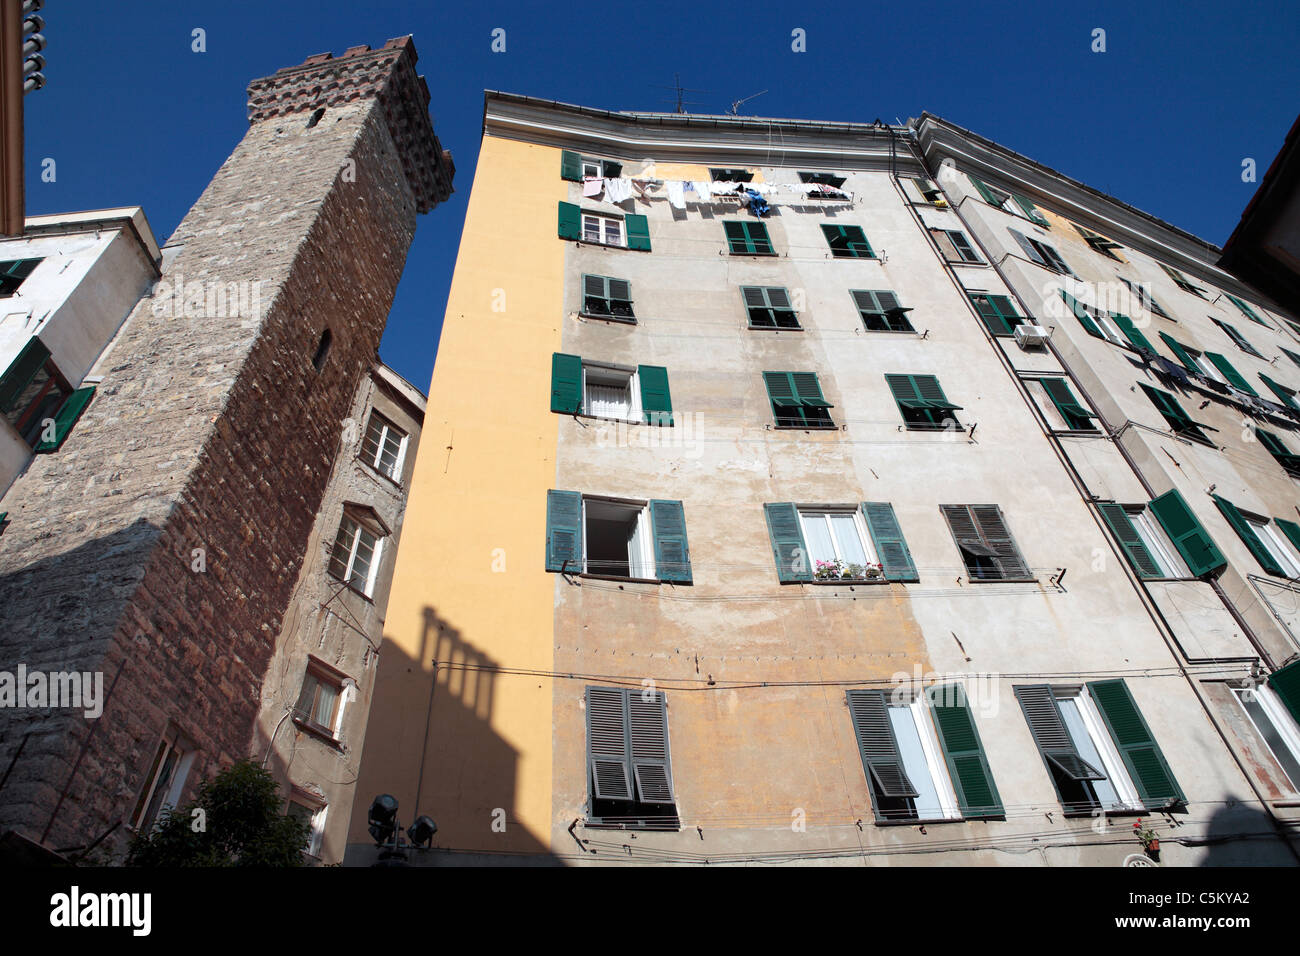 Old city, Genova, Liguria, Italy Stock Photo